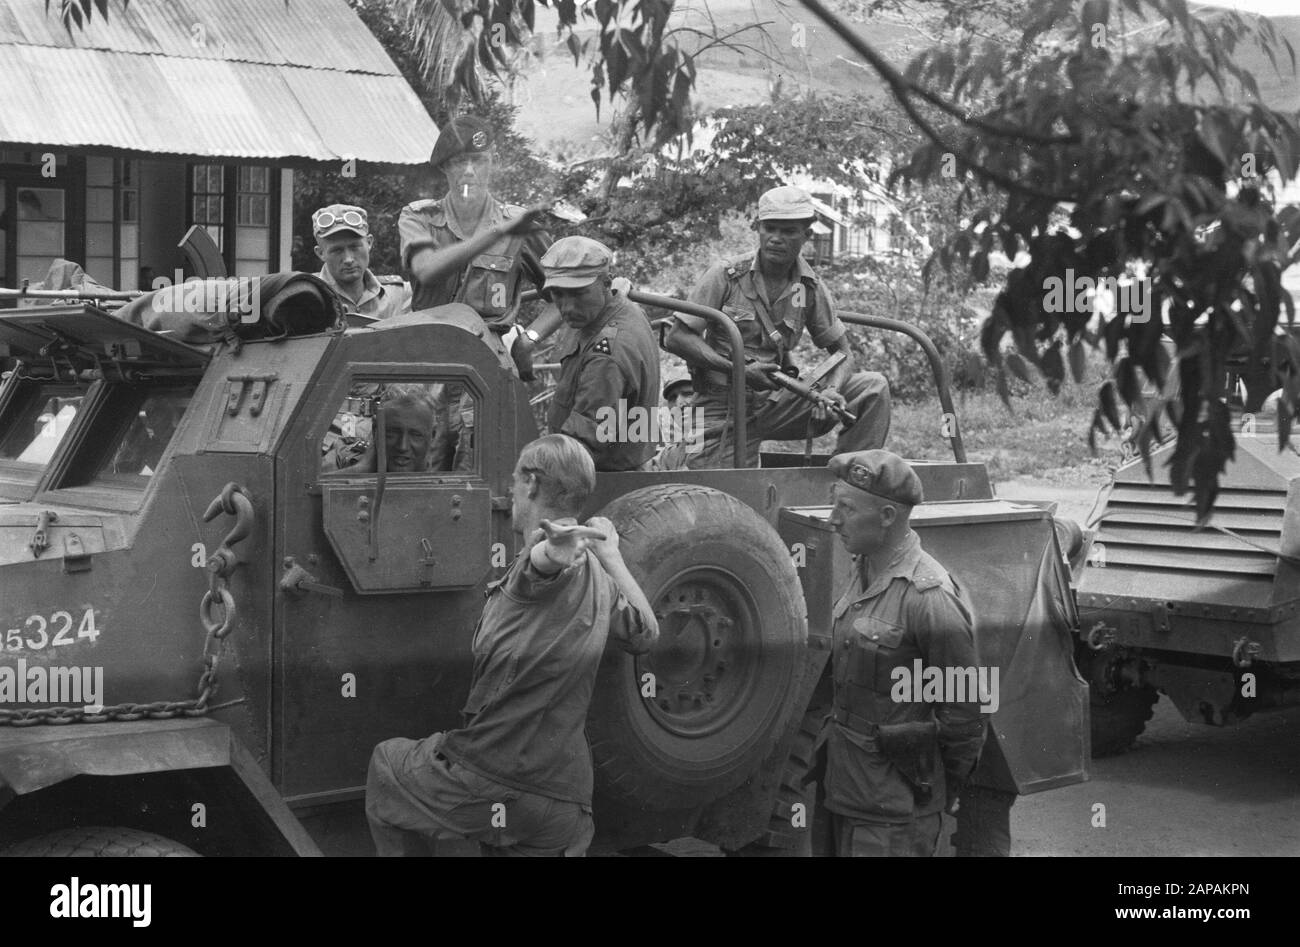 Conducteur CT15 A camion blindé avec équipage parle à d'autres militaires  Date: 1949 lieu: Indonésie, Pays-Bas Antilles orientales Photo Stock - Alamy